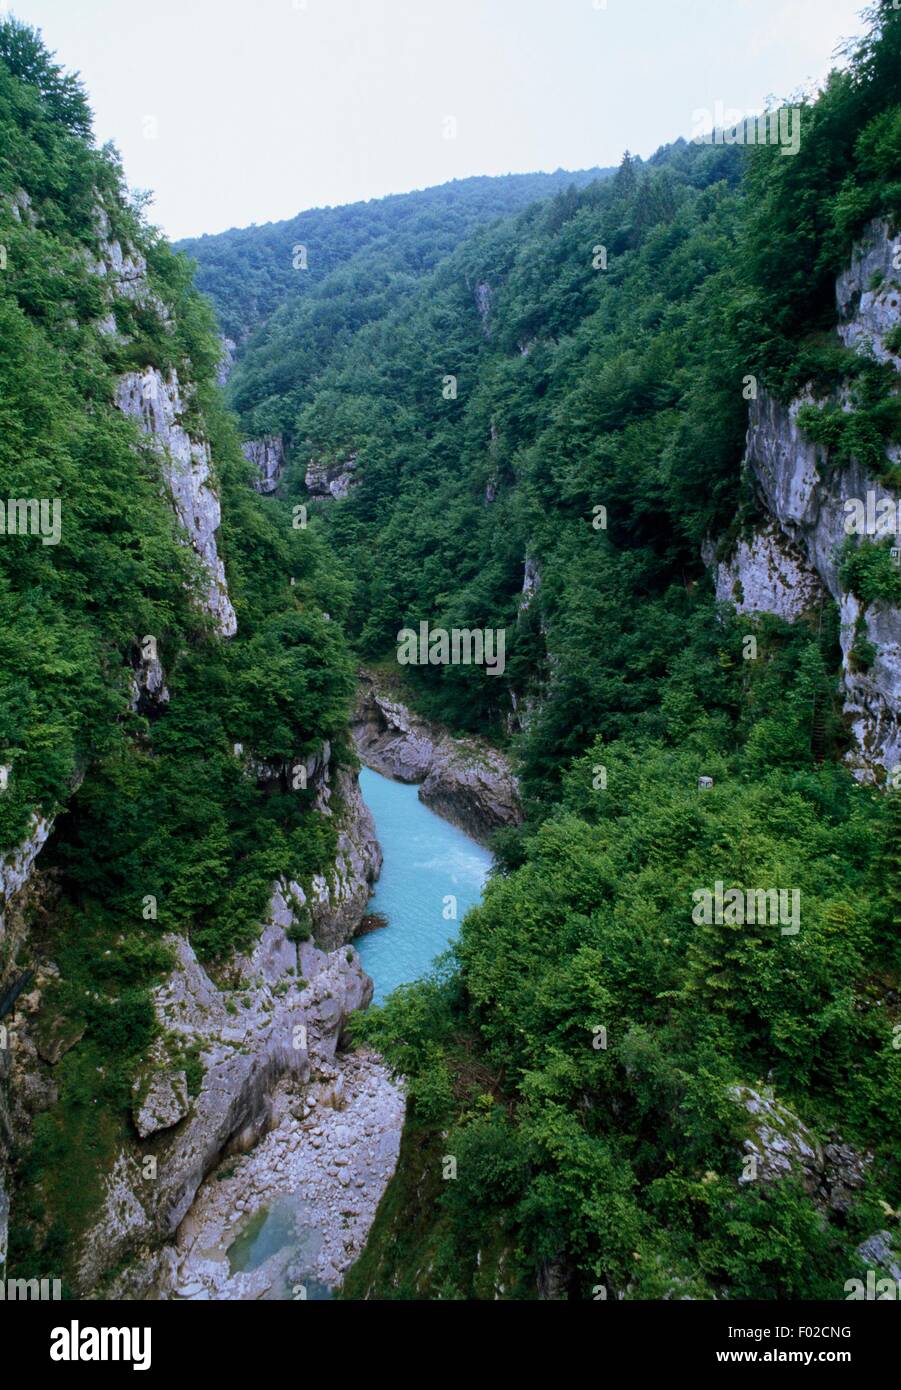 La rivière qui coule à travers un Cellina gorge avant de se jeter dans le lac de Barcis, Frioul-Vénétie Julienne, Italie. Banque D'Images